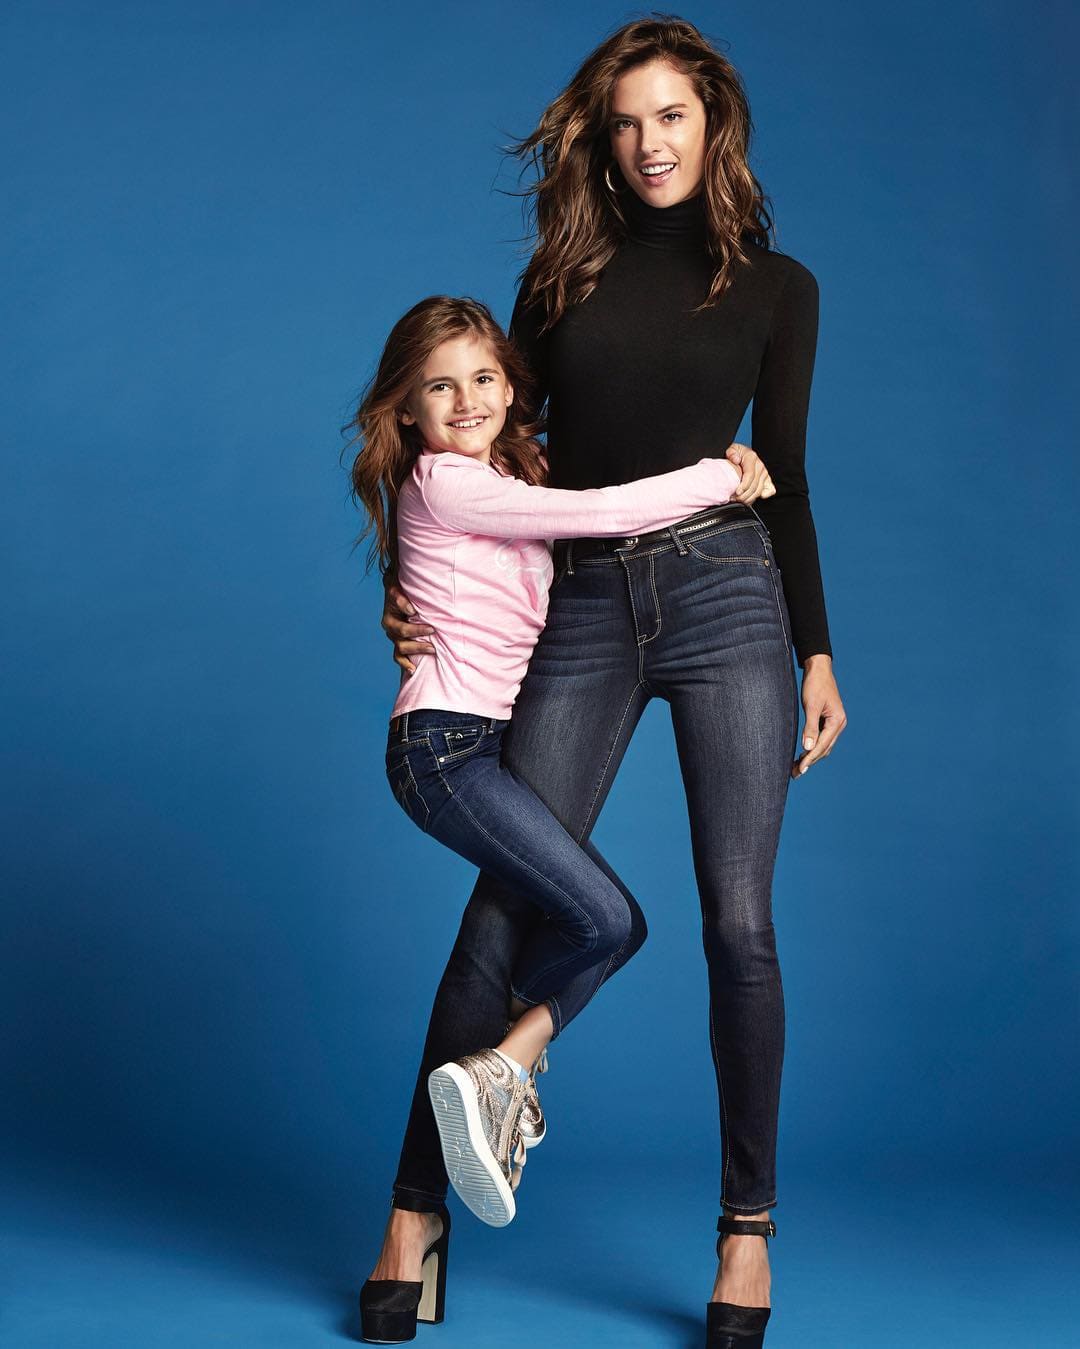 Với lợi thế chiều cao của mình, Anja đã nhiều lần xuất hiện cùng mẹ trên bìa tạp chí thời trang cũng như sải bước trên sàn runway.